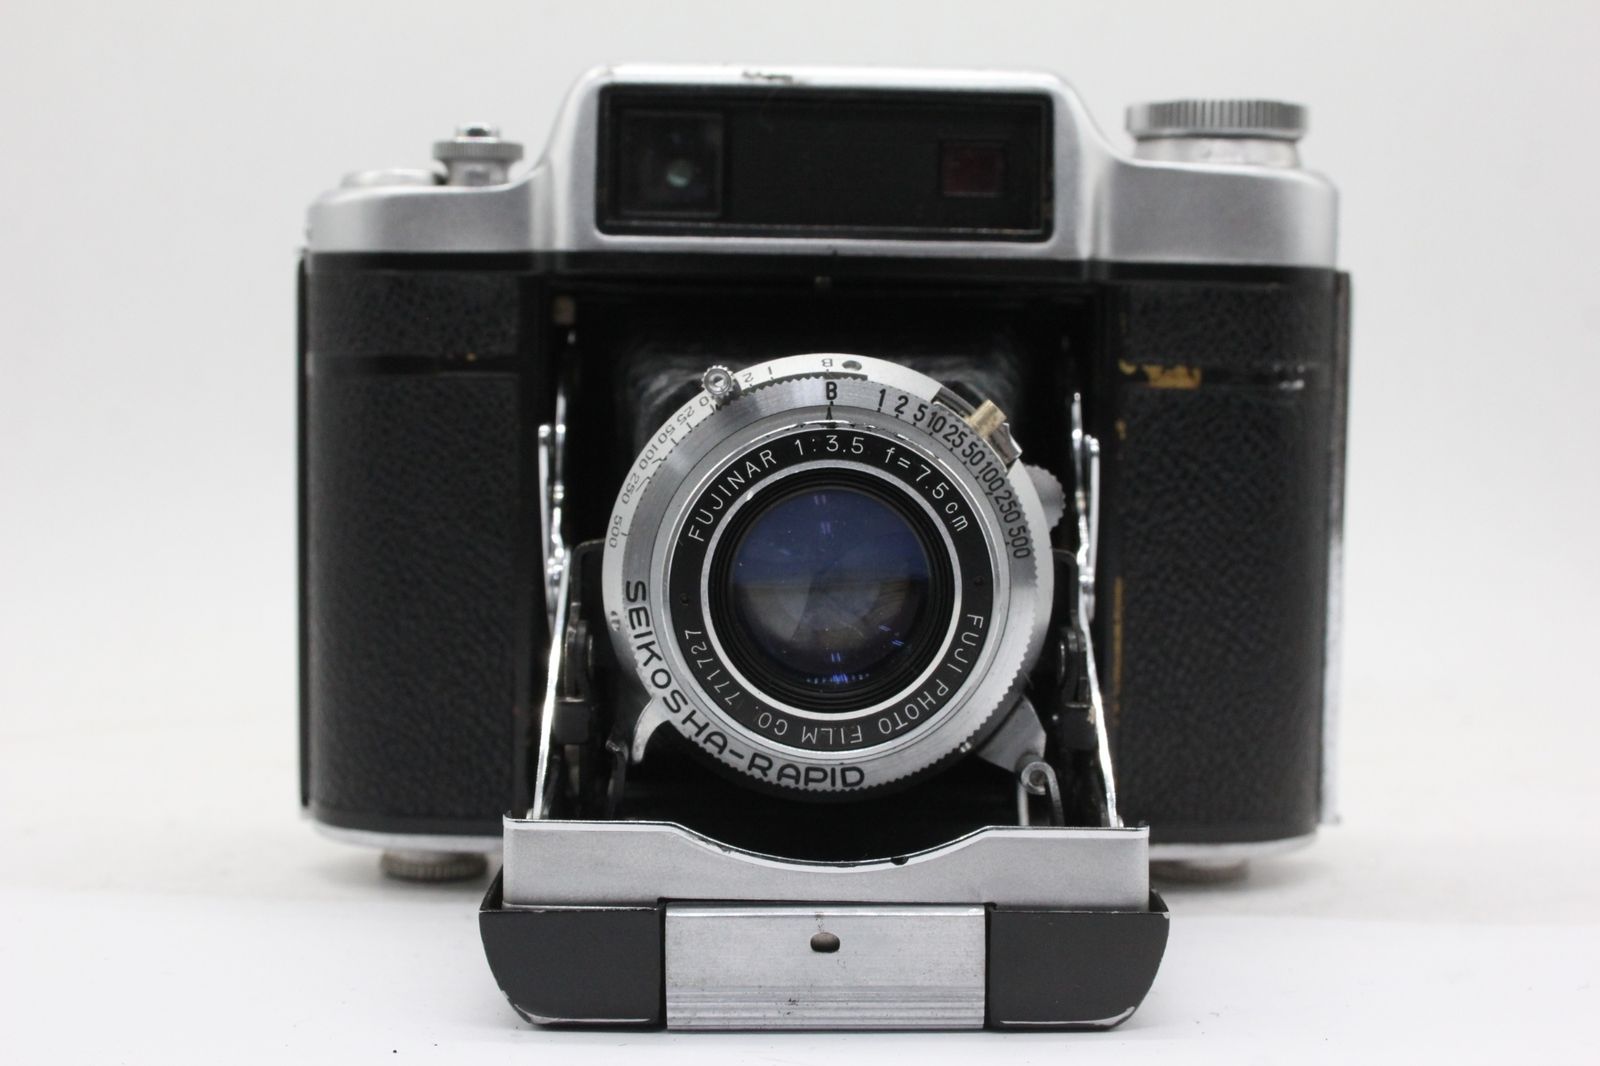 返品保証】 フジカ Super Fujica-6 Fujinar 7.5cm F3.5 蛇腹カメラ v2369 - メルカリ